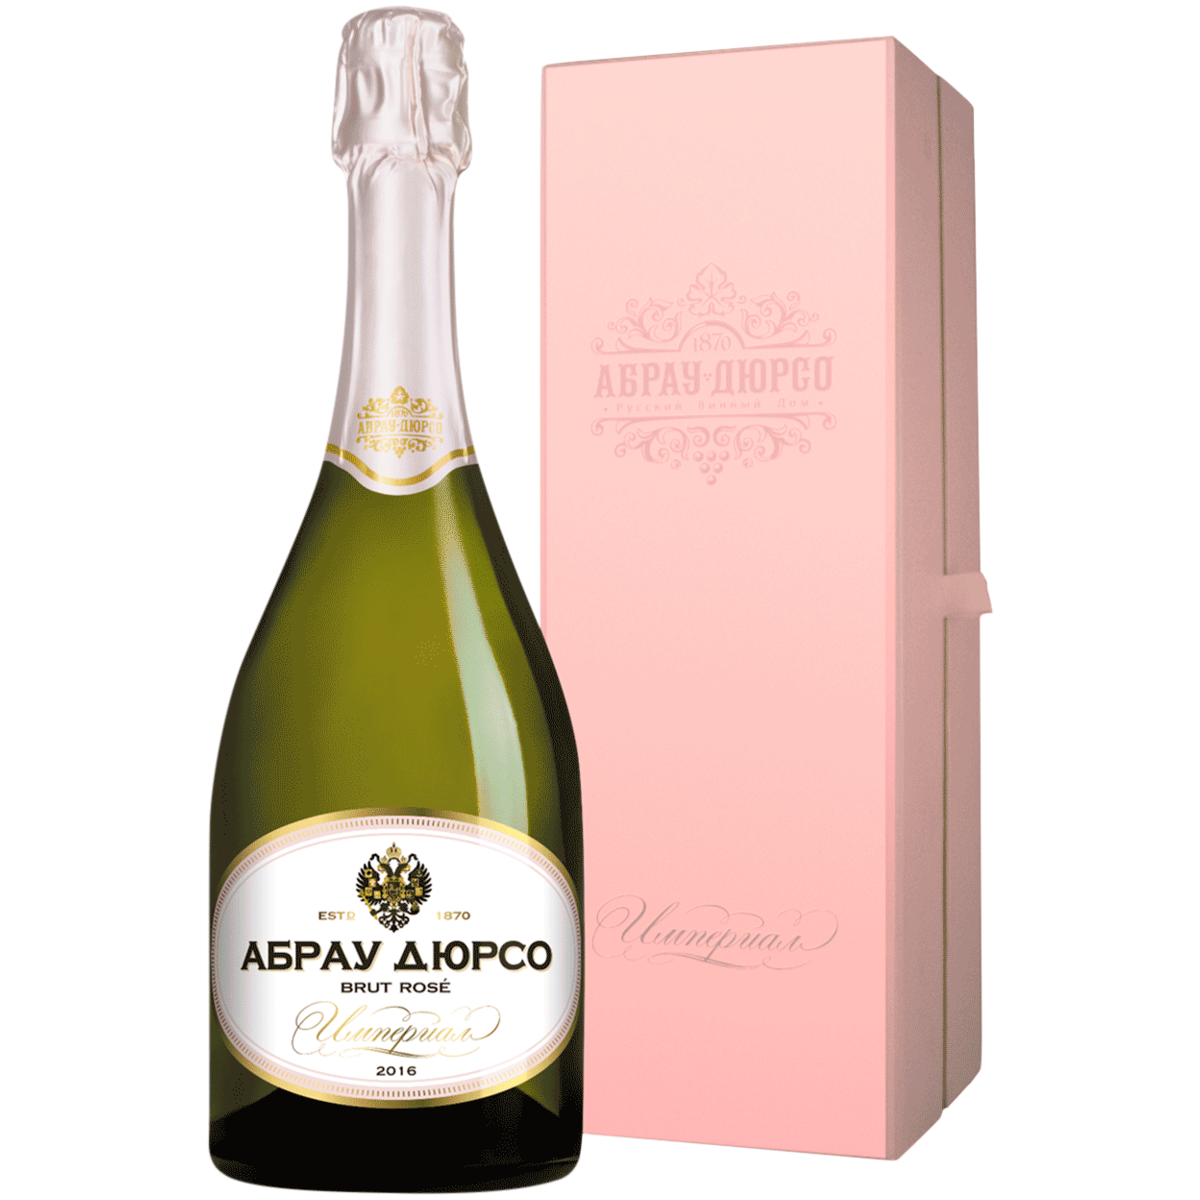 Абрау-Дюрсо Империал брют Розе. Абрау-Дюрсо Империал шампанское. Шампанское Абрау-Дюрсо, "Империал" брют Розе. Империал Brut Rose Абрау Дюрсо.